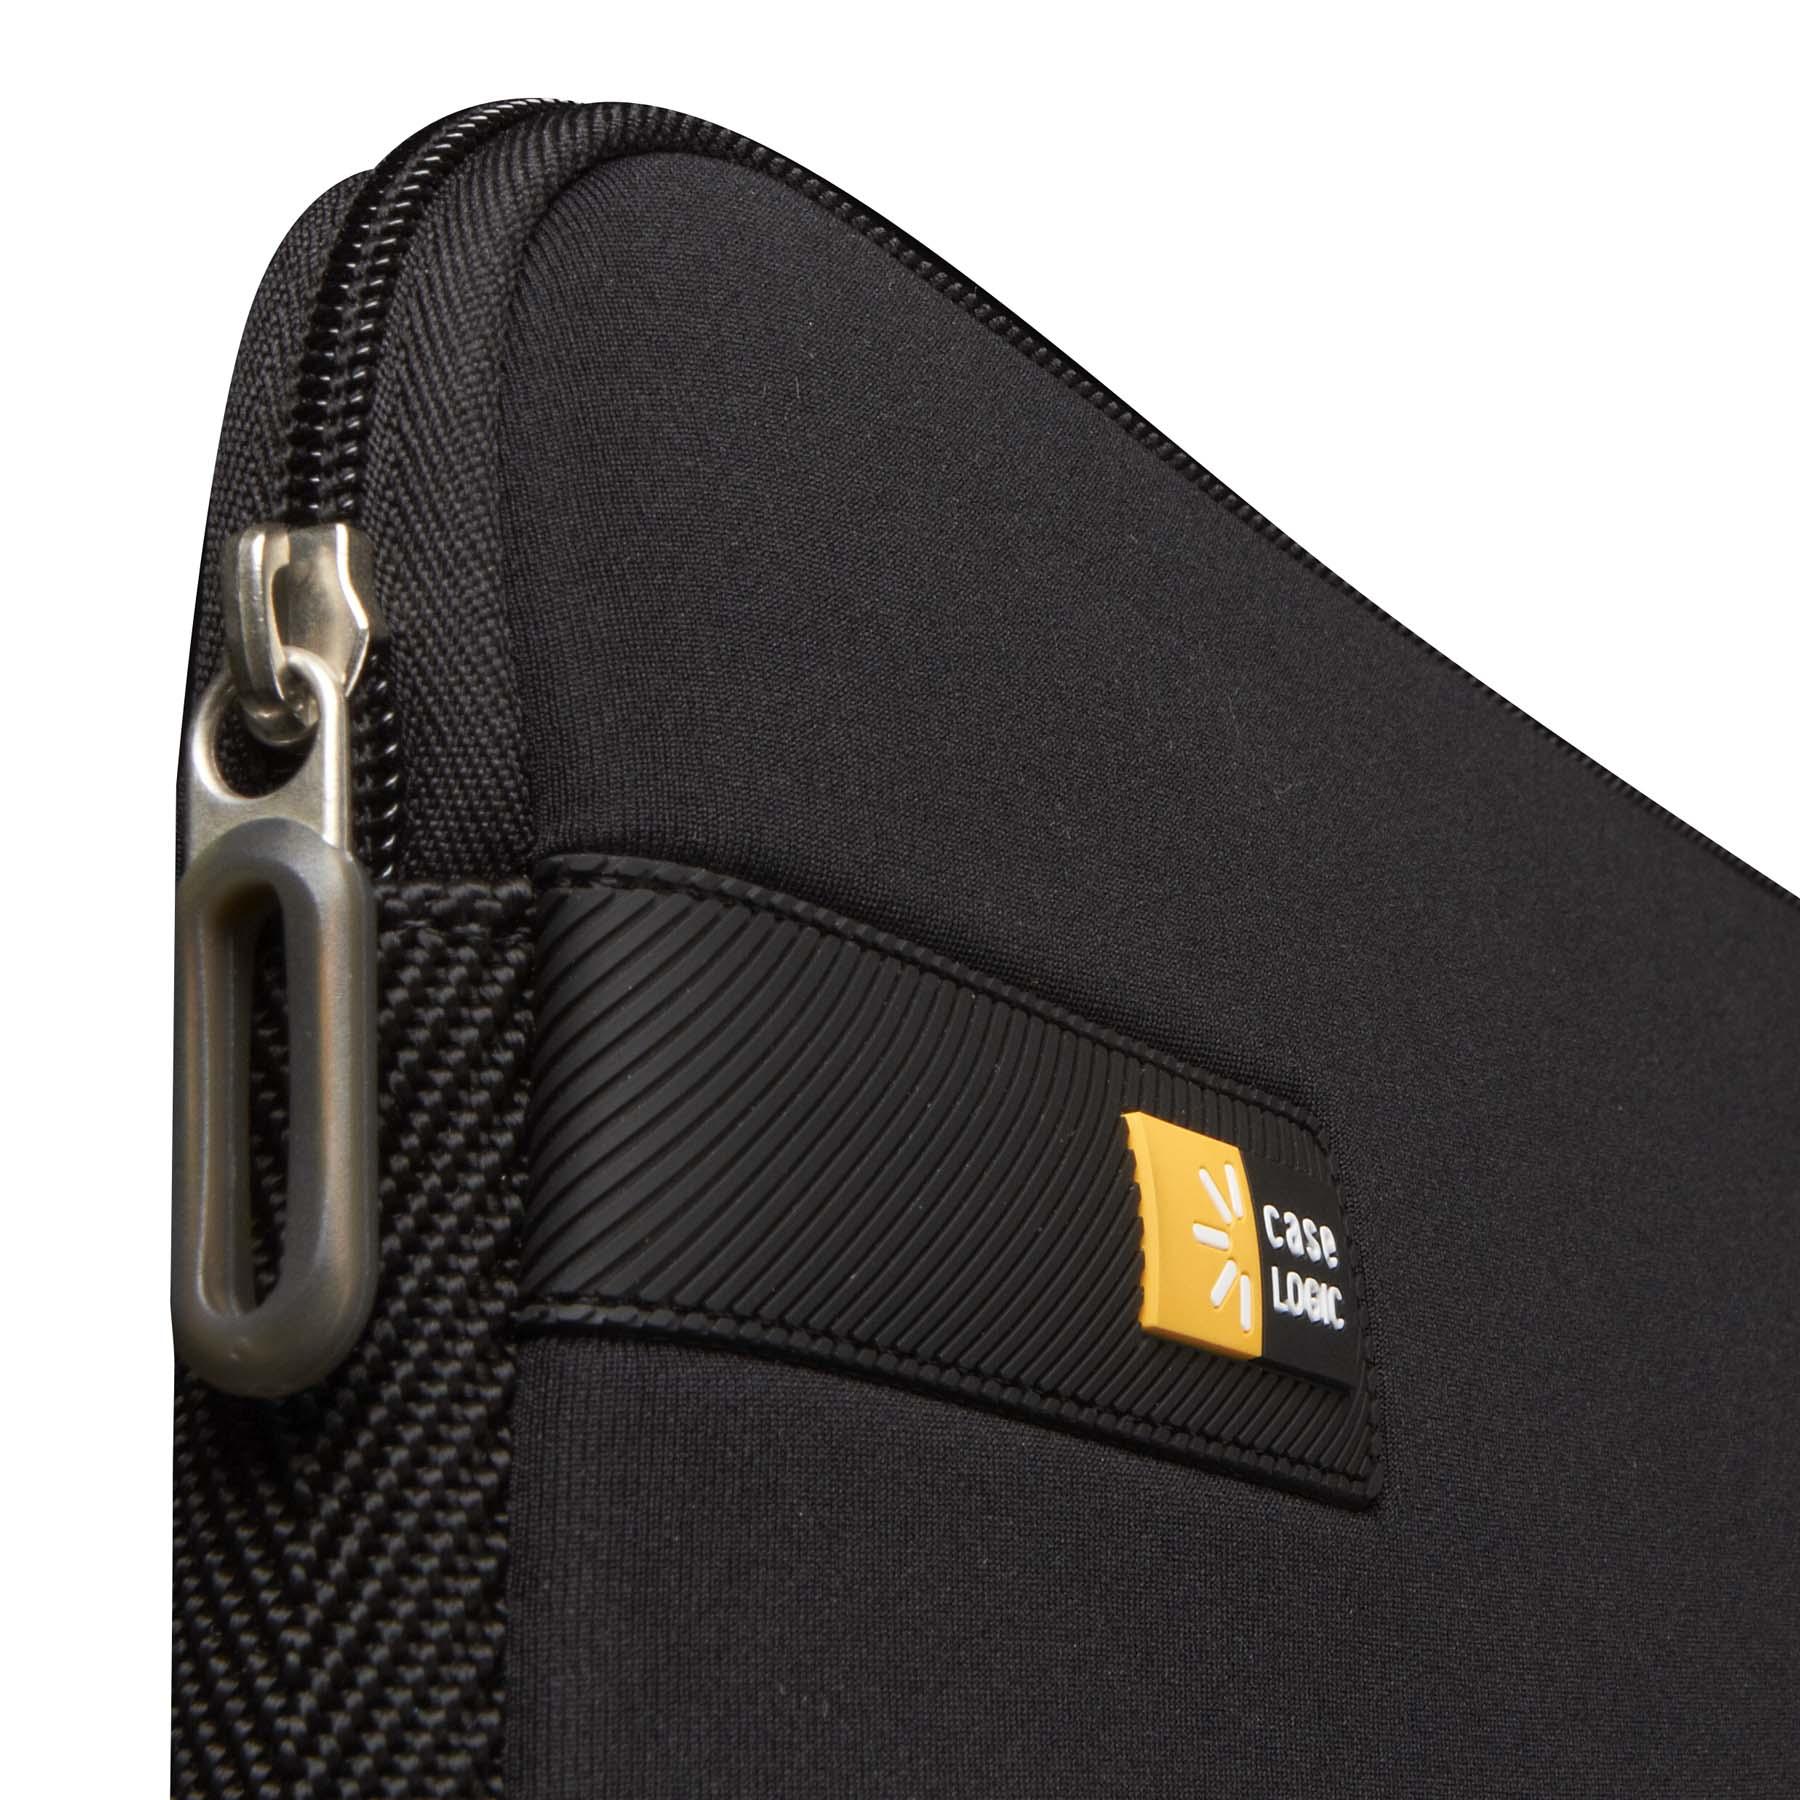 CASE LOGIC Schwarz Sleeve Universal EVA-Schaum, Universal Notebooksleeve für